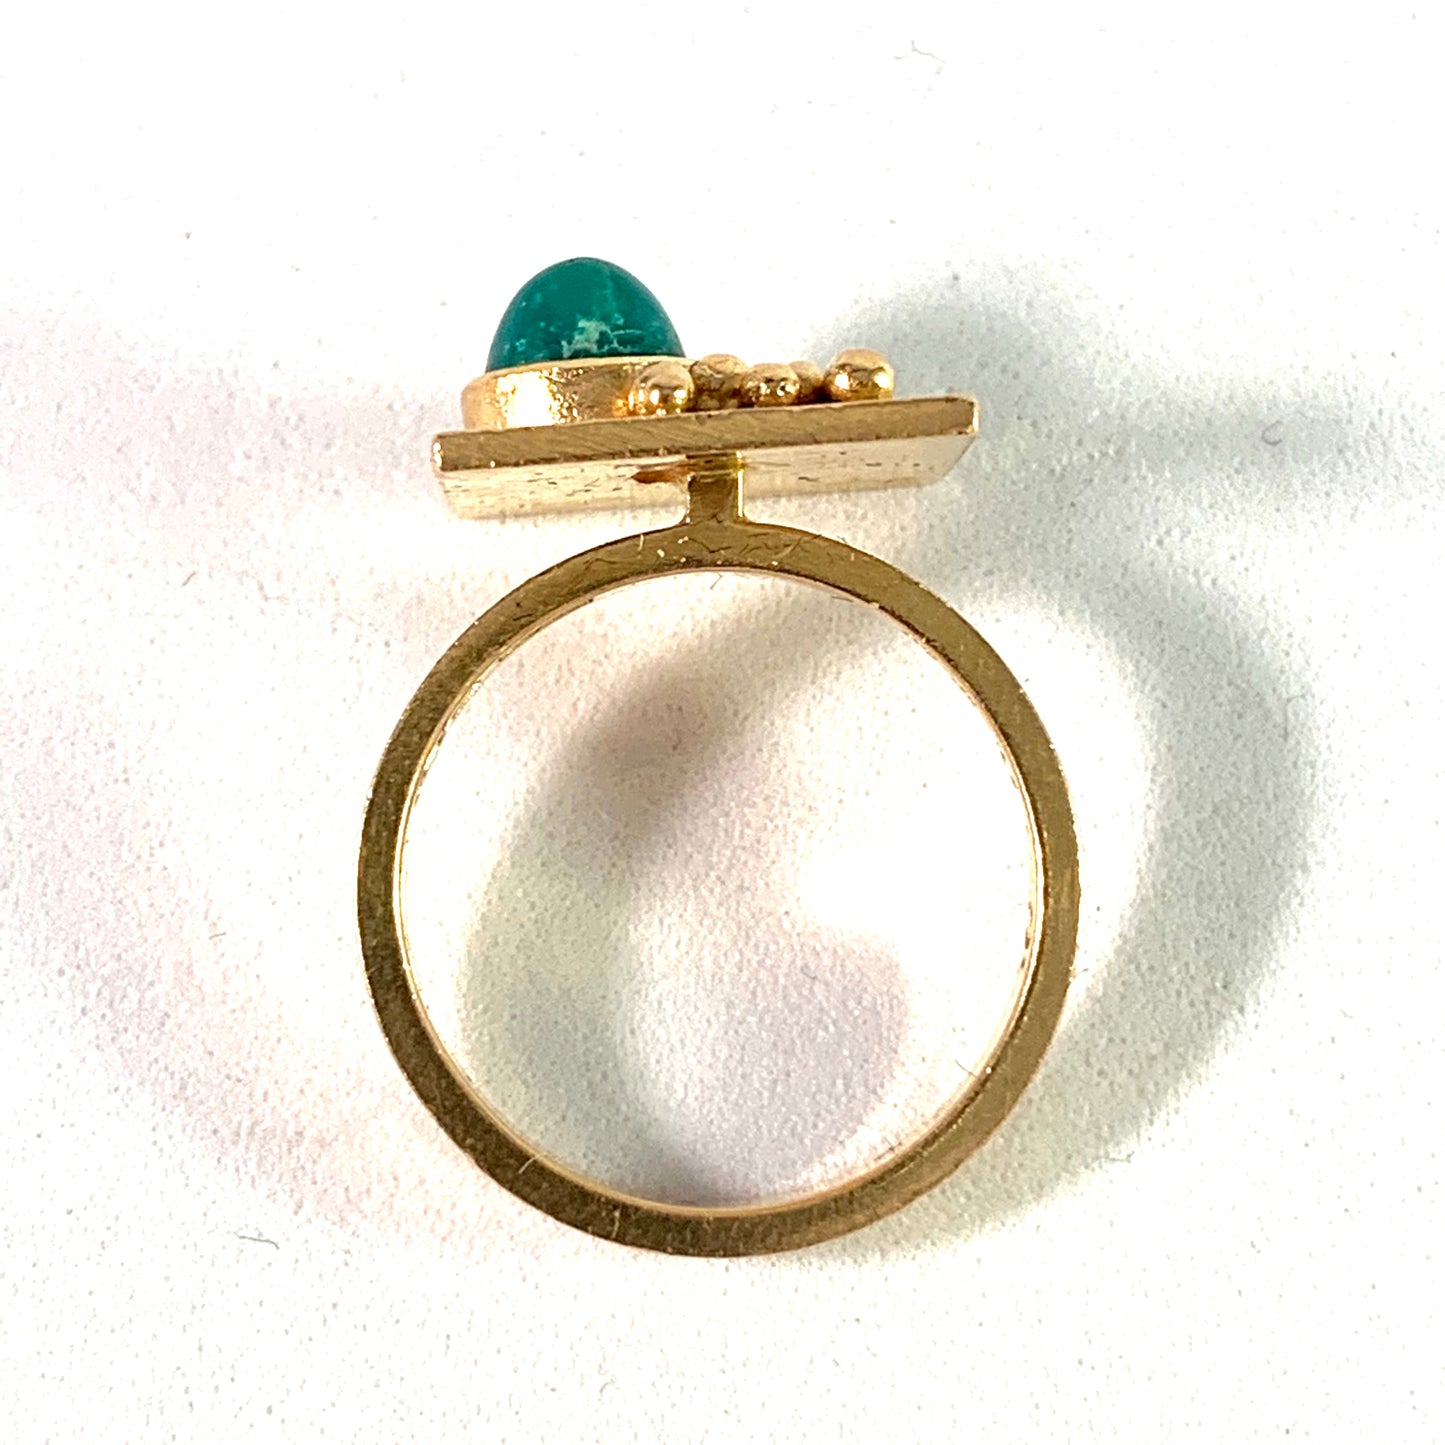 Ateljé Candra, Liedholm Sweden 1968. Modernist 18k Gold Turquoise Ring. Signed.